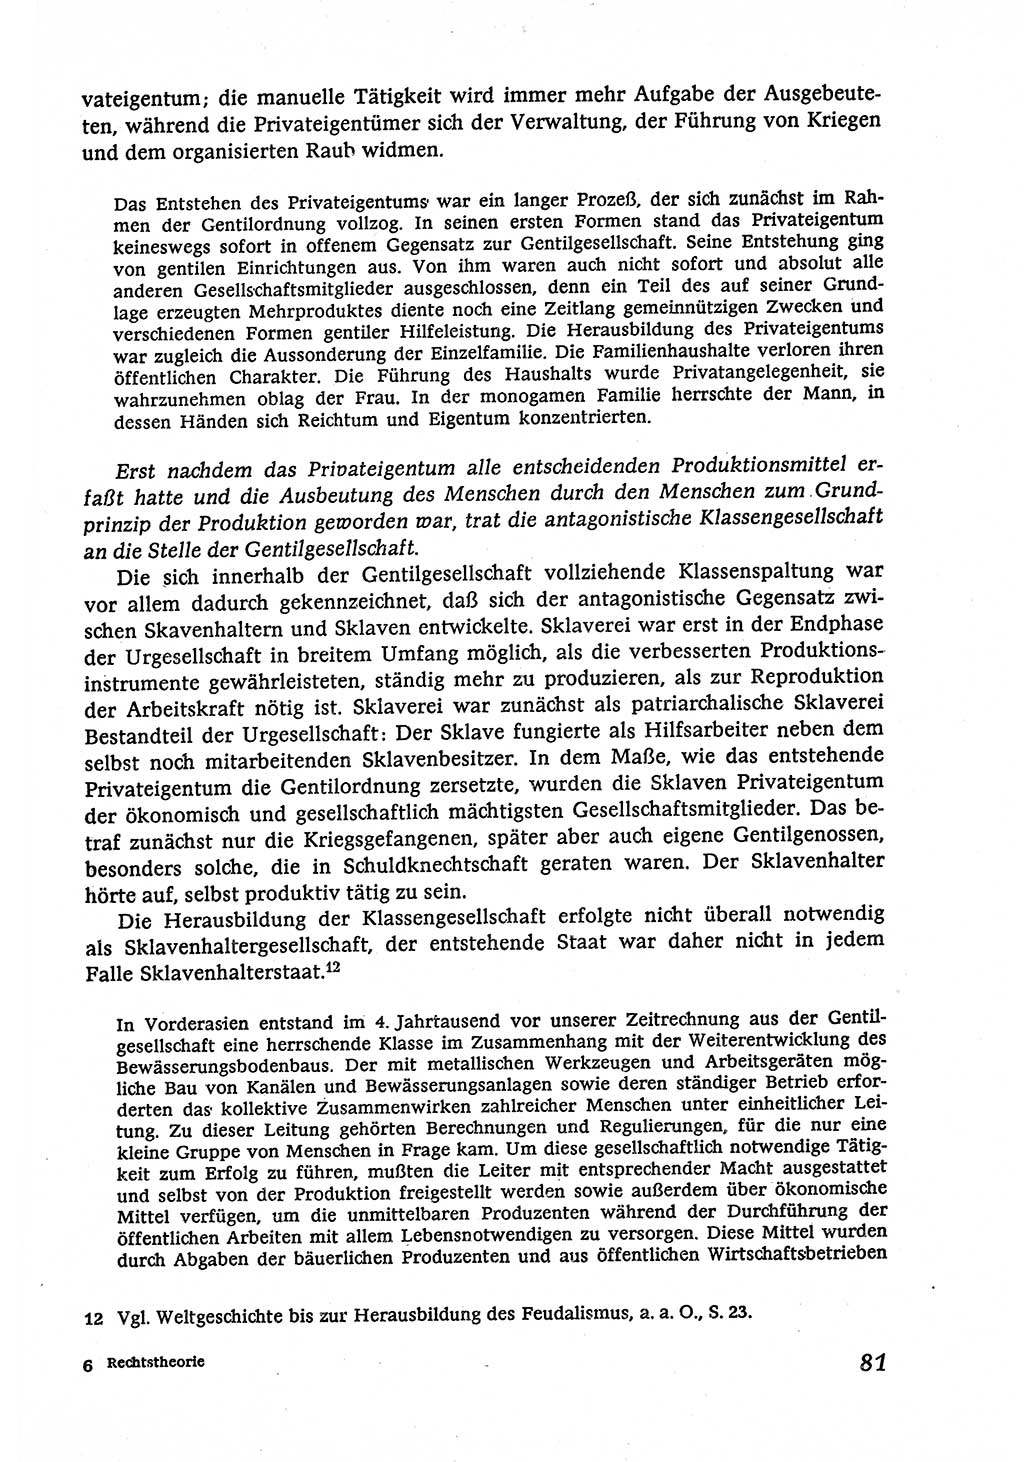 Marxistisch-leninistische (ML) Staats- und Rechtstheorie [Deutsche Demokratische Republik (DDR)], Lehrbuch 1980, Seite 81 (ML St.-R.-Th. DDR Lb. 1980, S. 81)